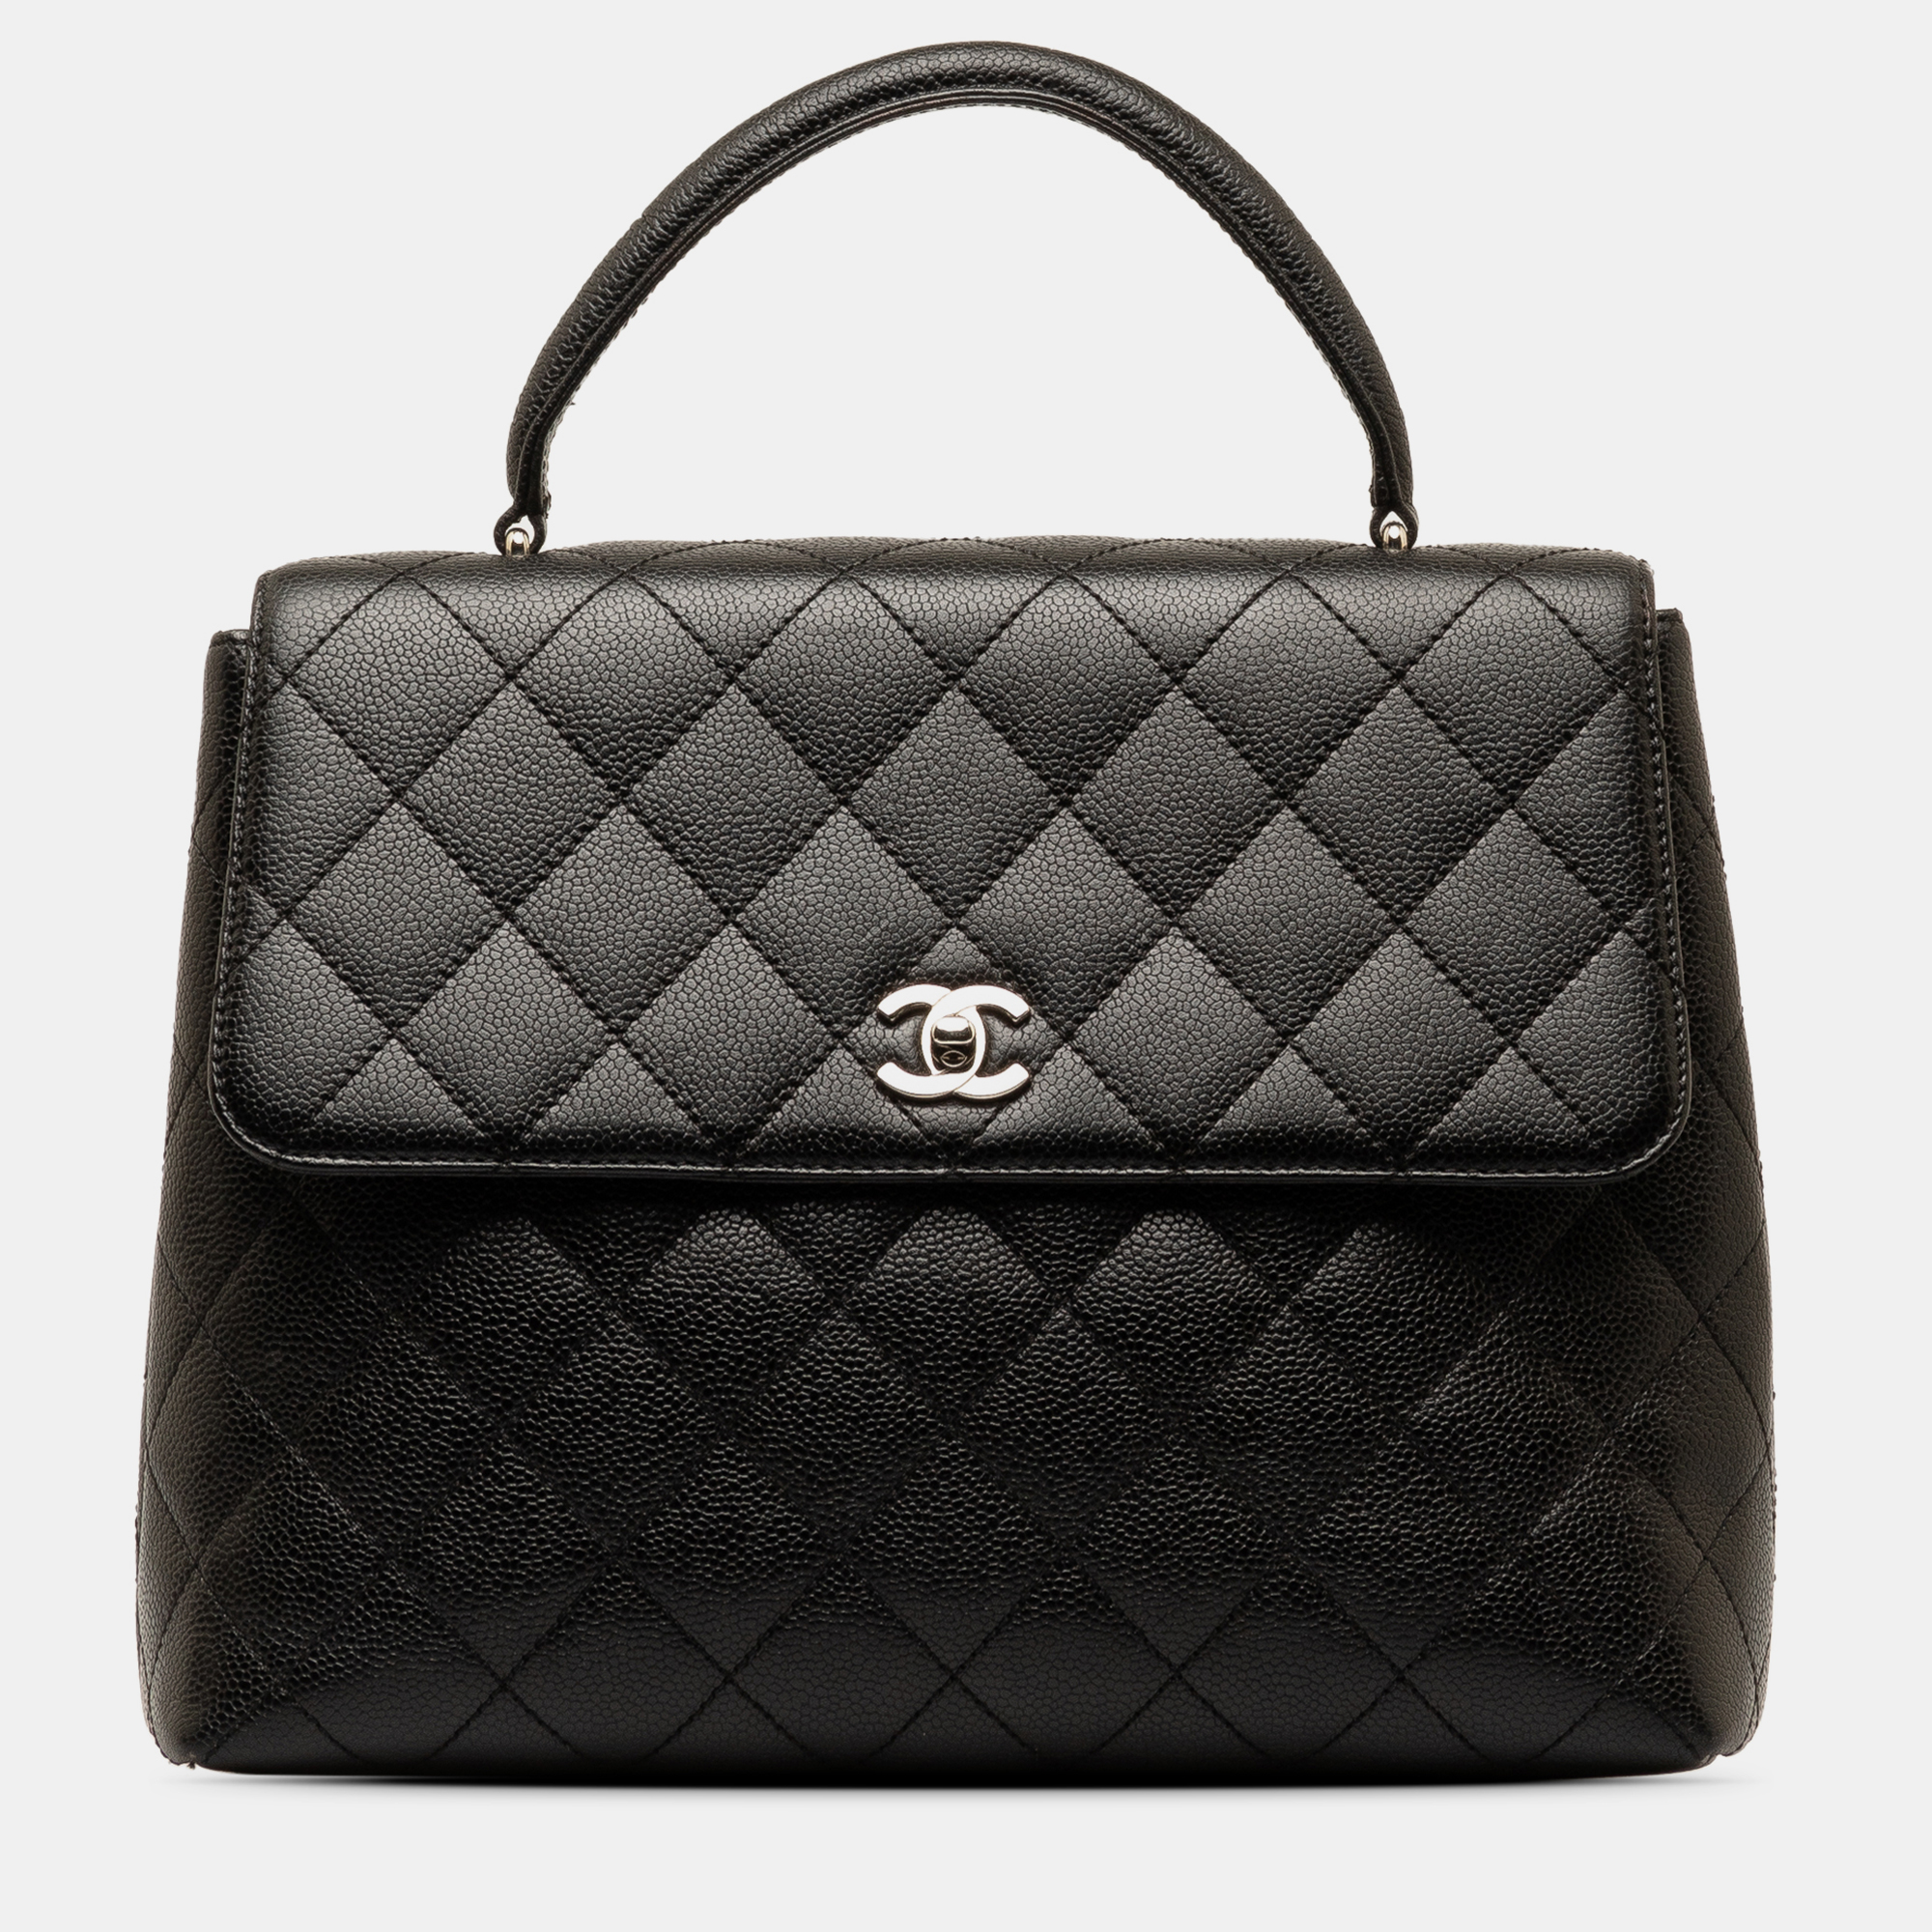 

Chanel Caviar Kelly Top Handle Bag, Black